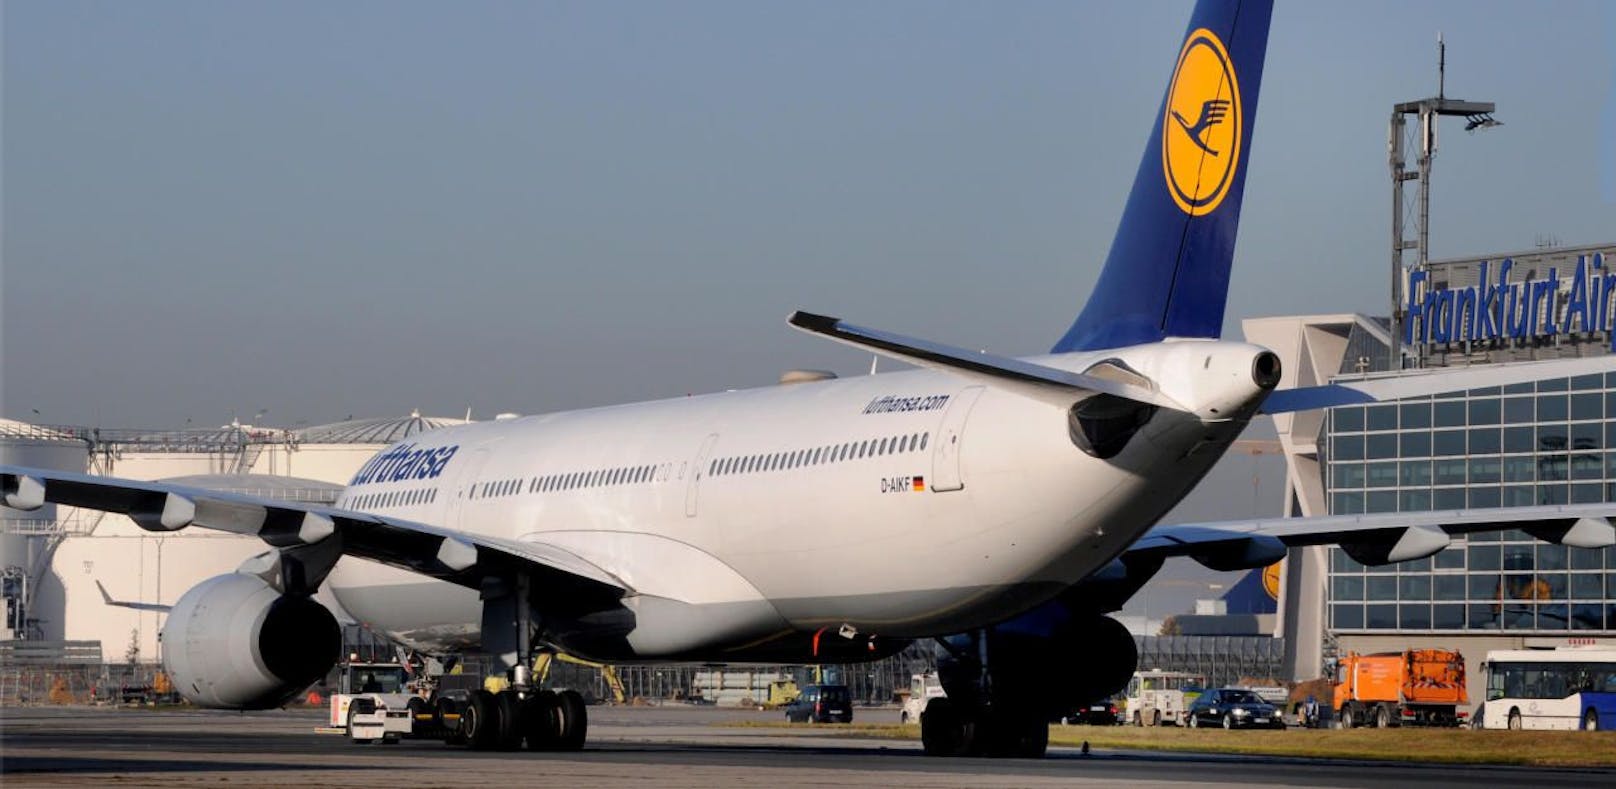 Passagier wirft Lufthansa Nervengift in Maschine vor